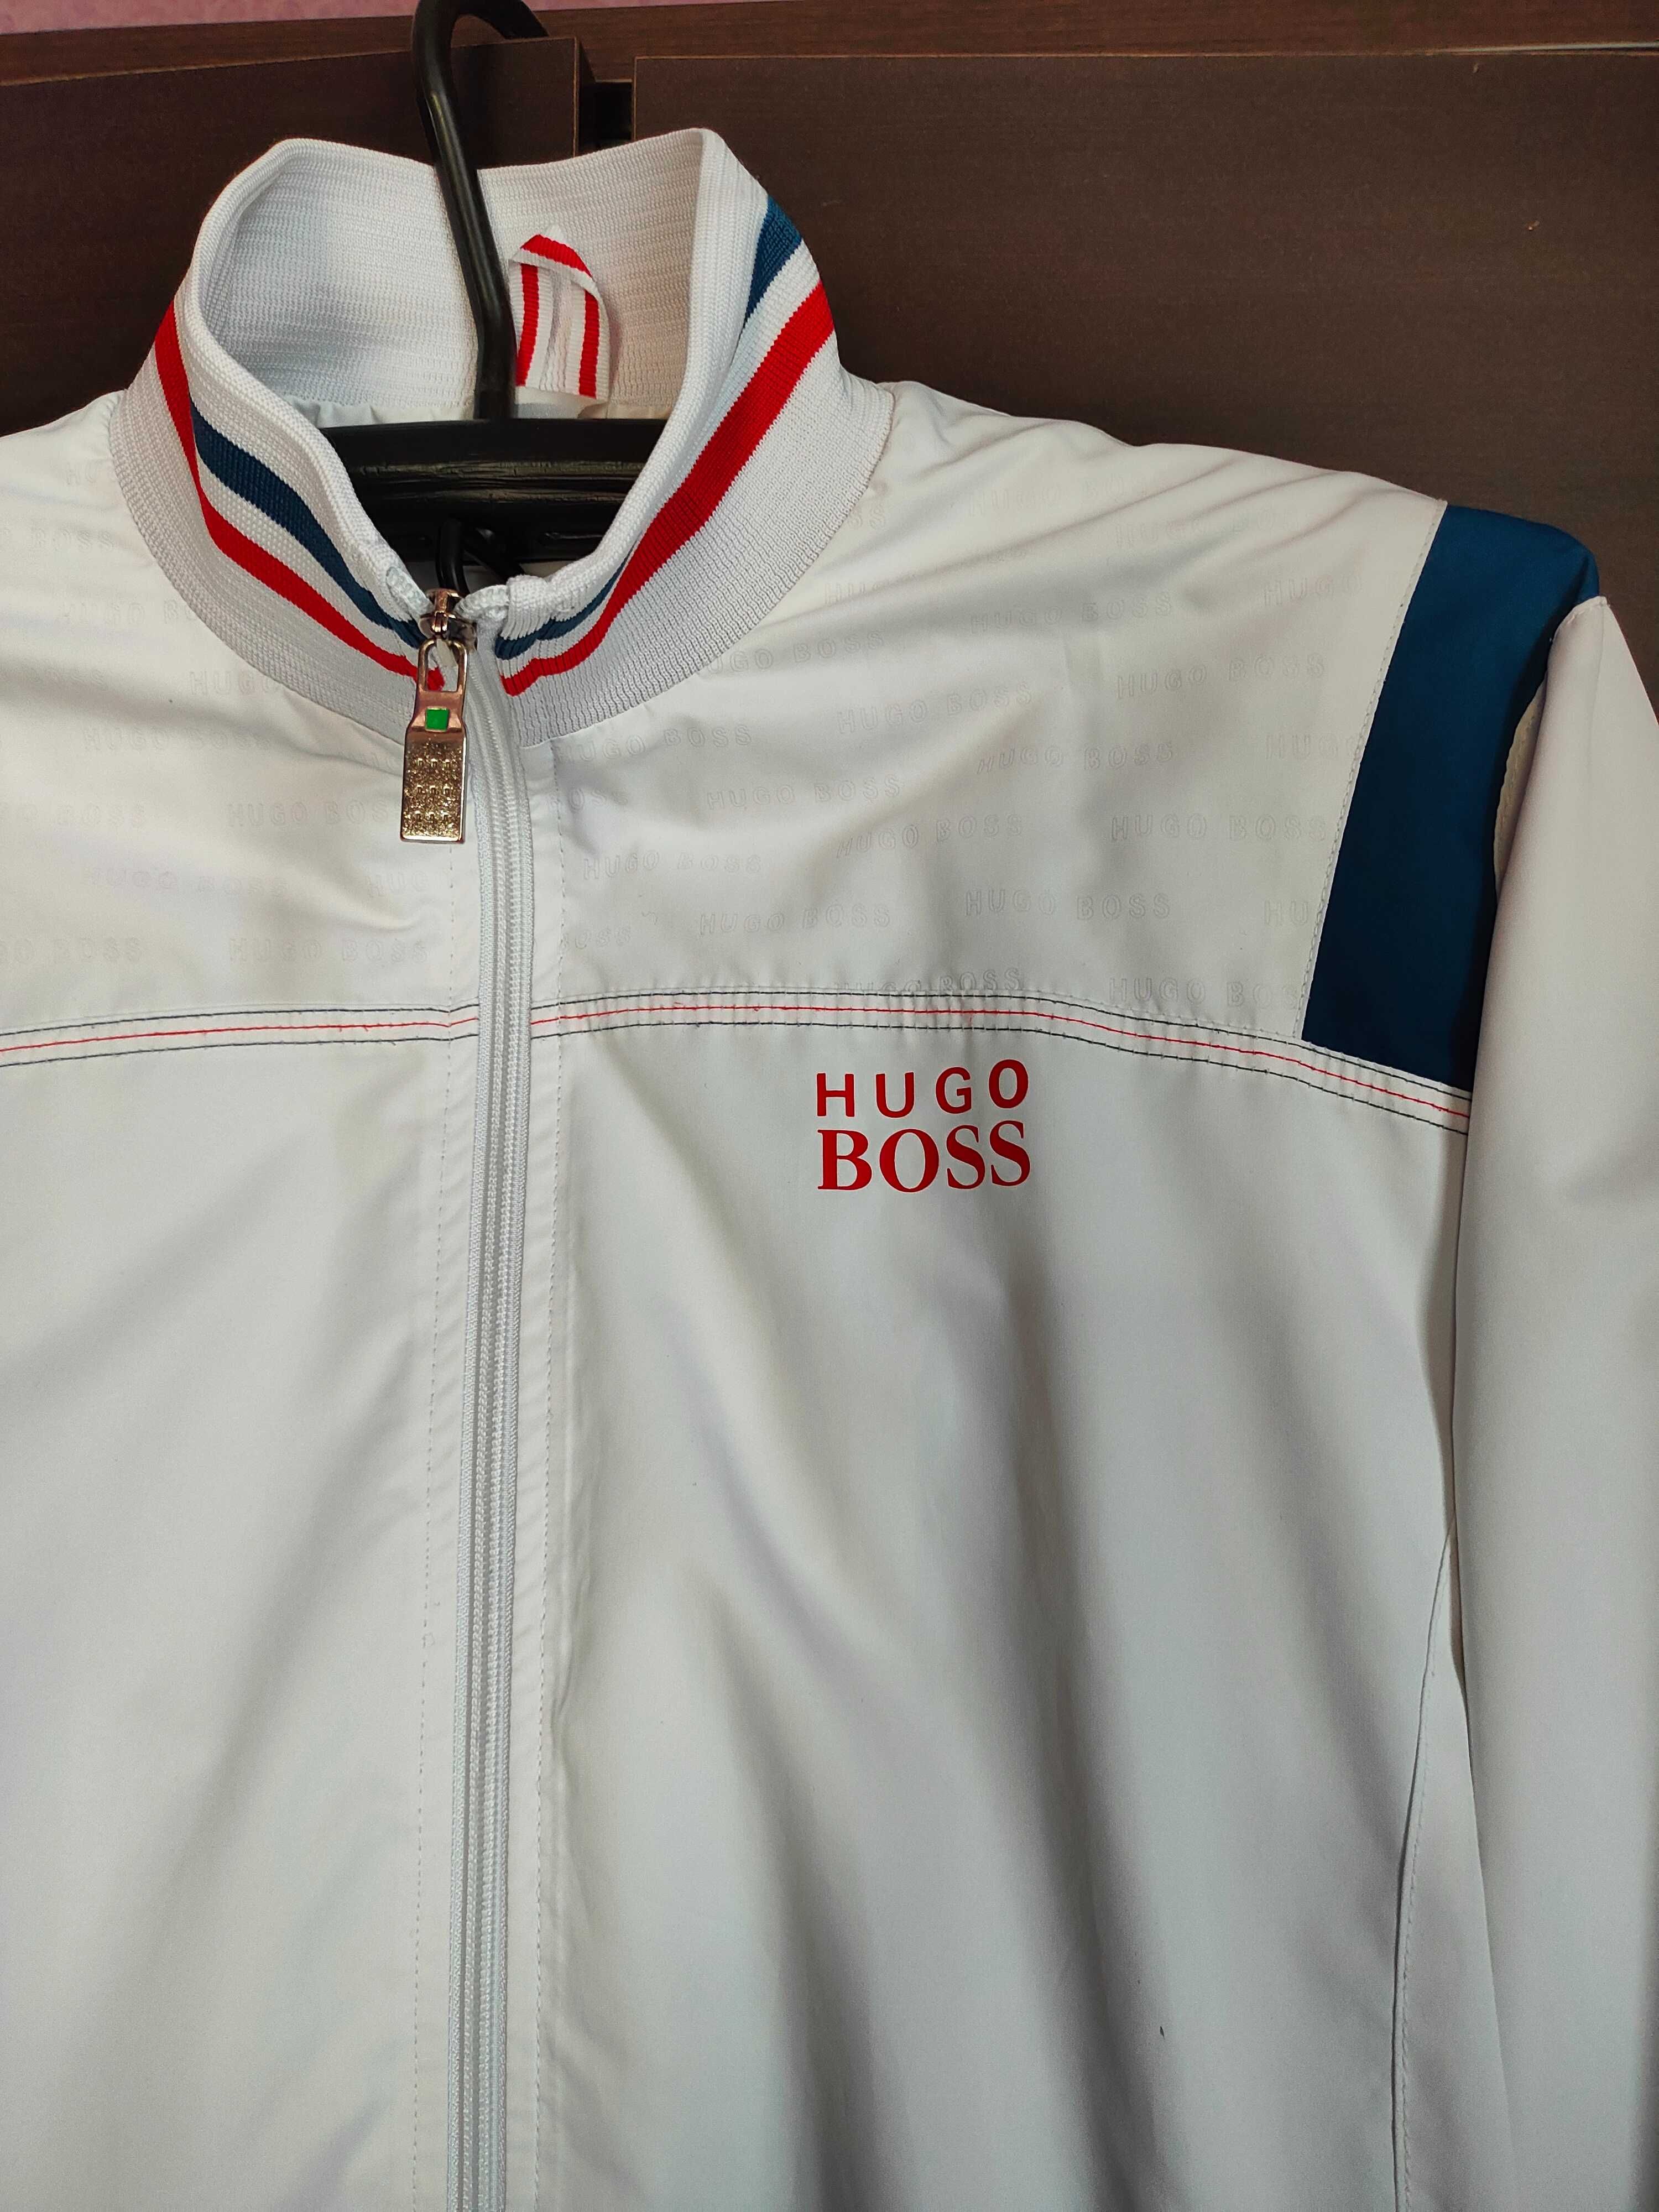 Ветровка, спортивная куртка, мастерка, Олимпика Hugo Boss